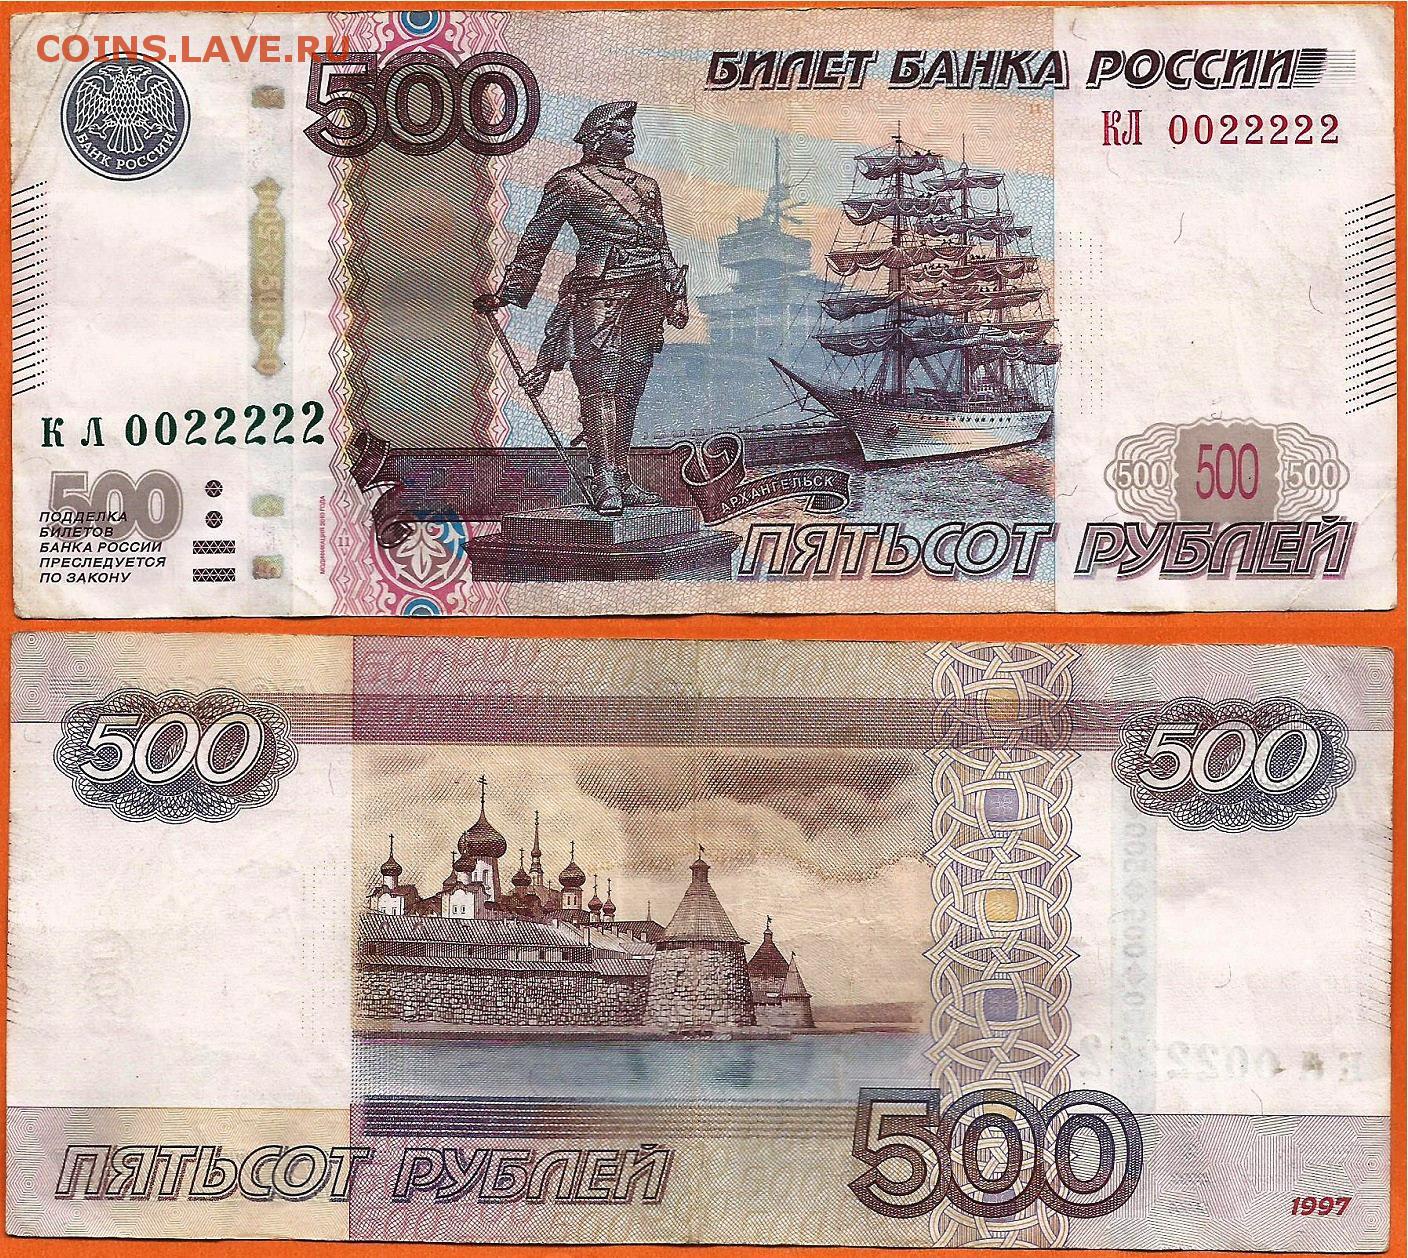 Пятьсот пятьдесят пять тысяч. 500 Рублей для печати. Купюры денег 500 рублей. 500 Руб печатать. Пятьсот рублей для распечатки.